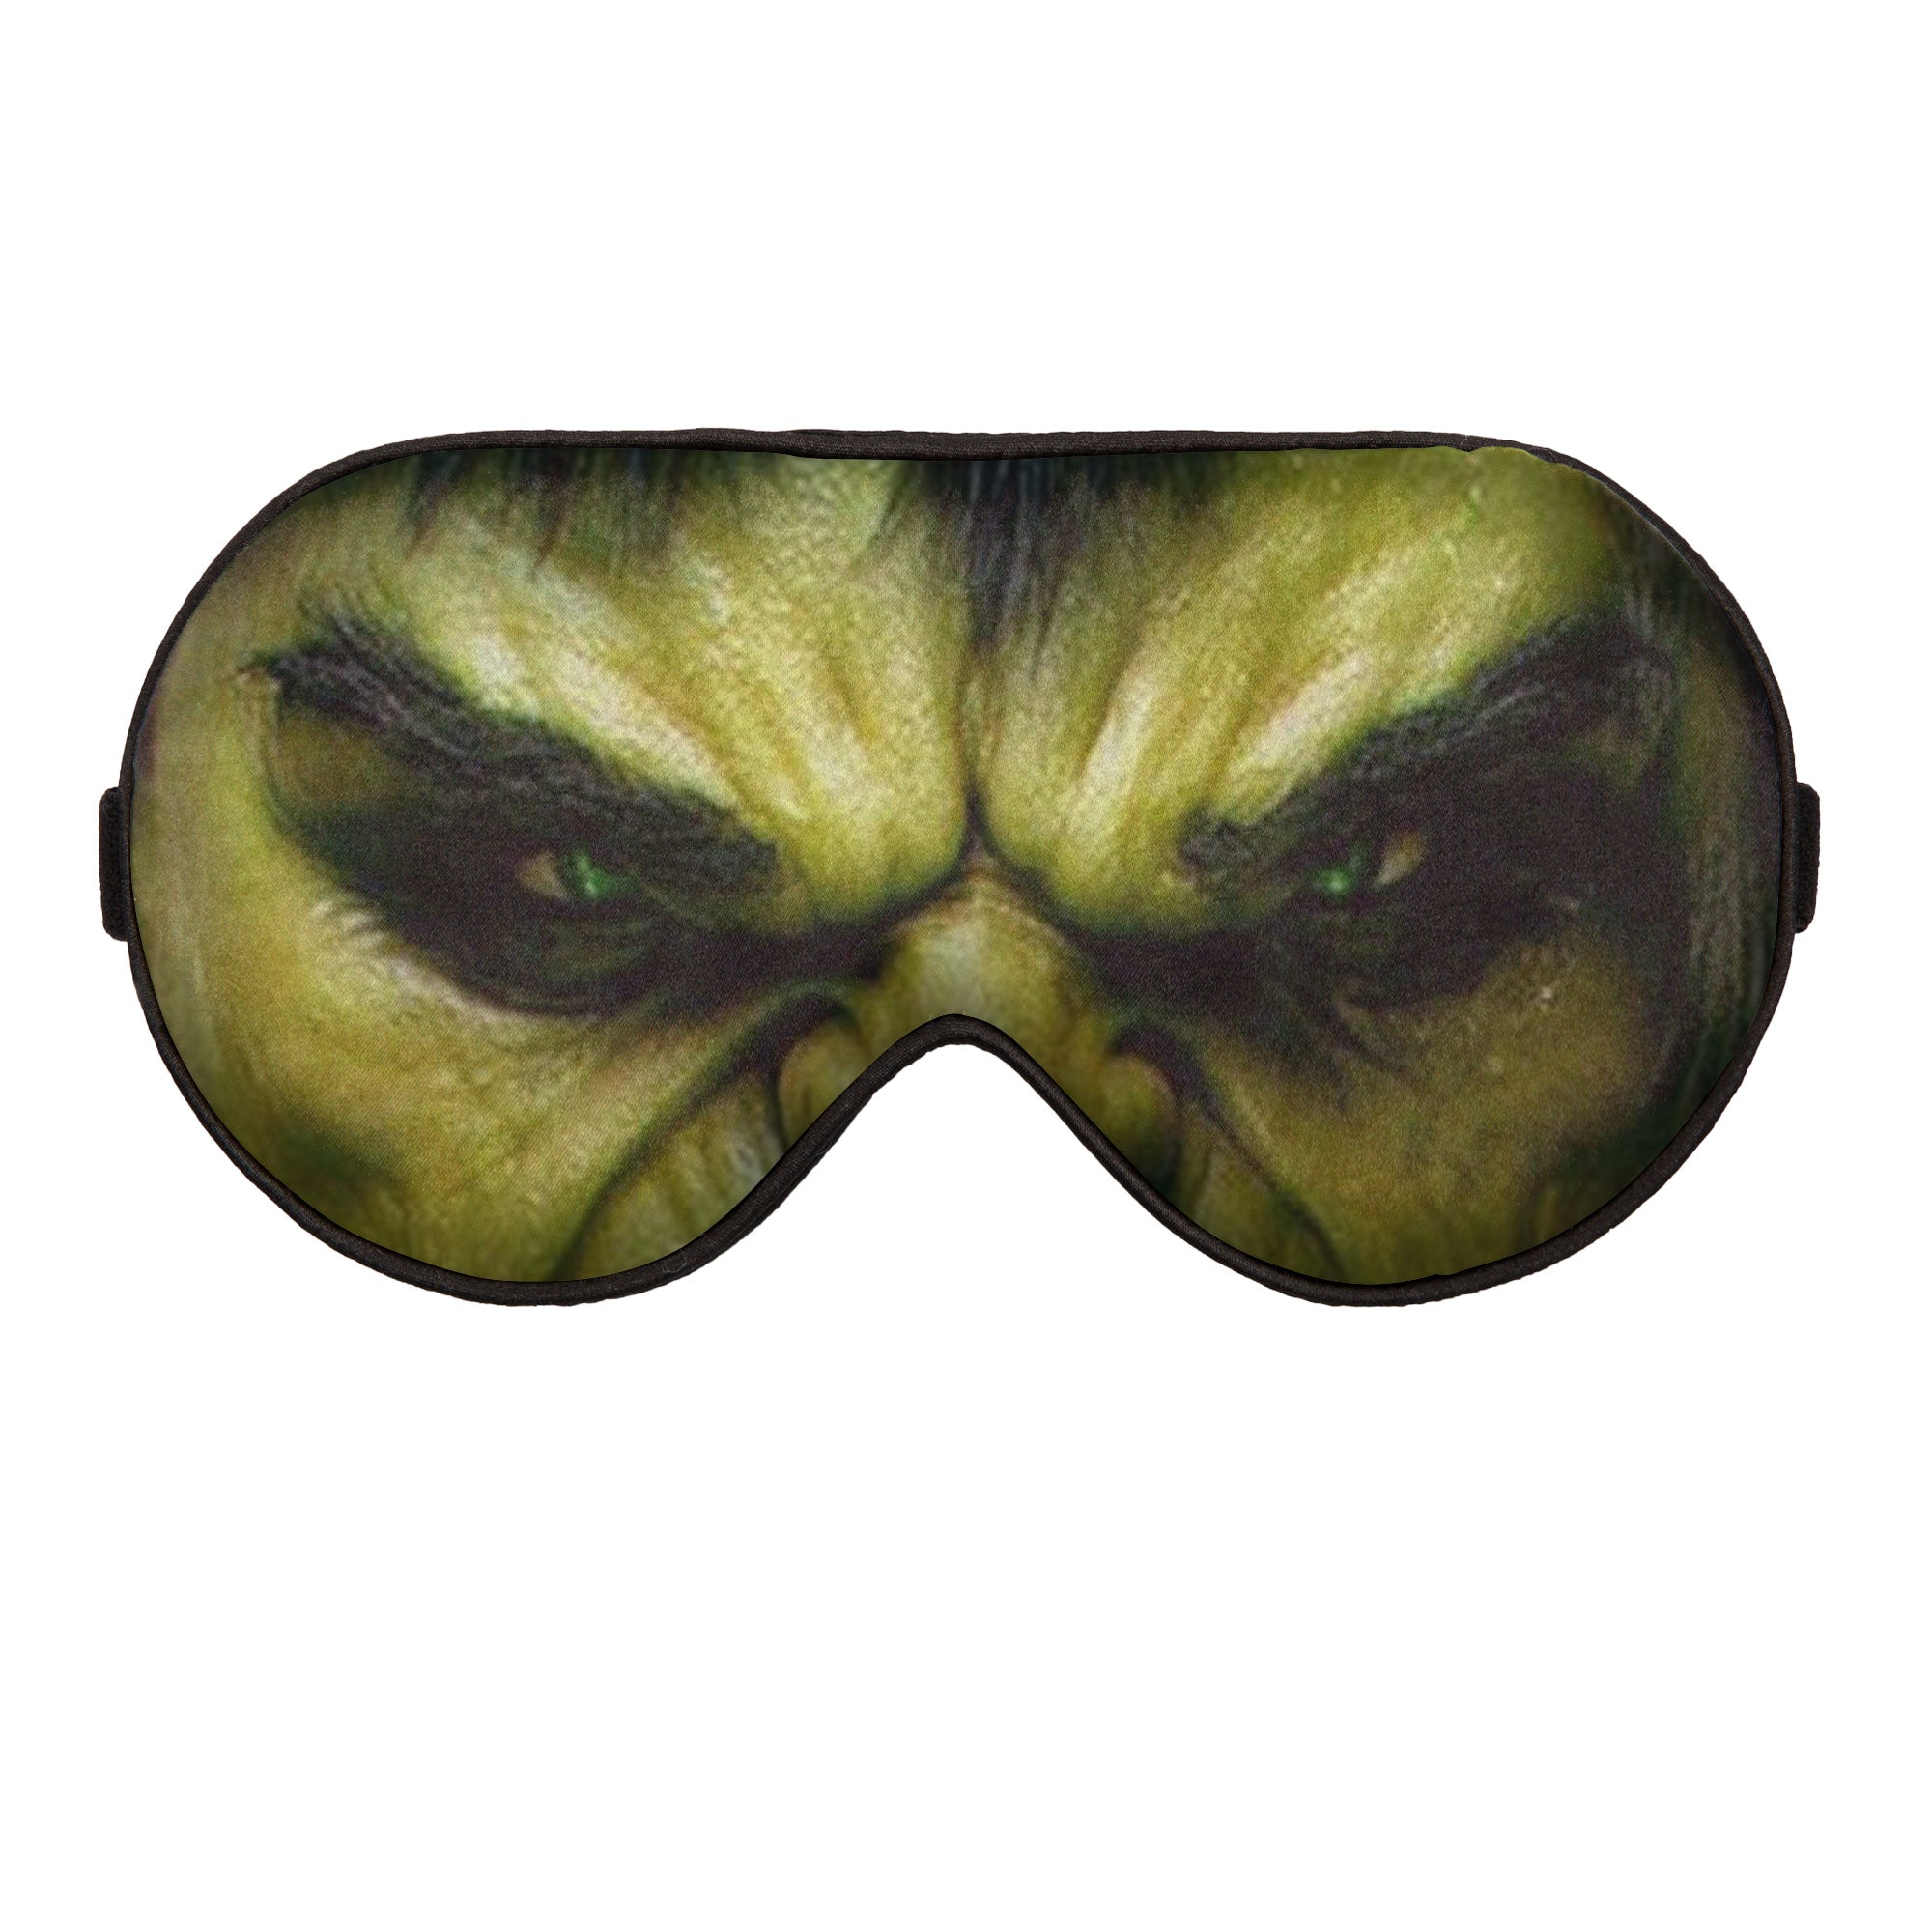 Hulk from Avengers Custom Sleep Mask